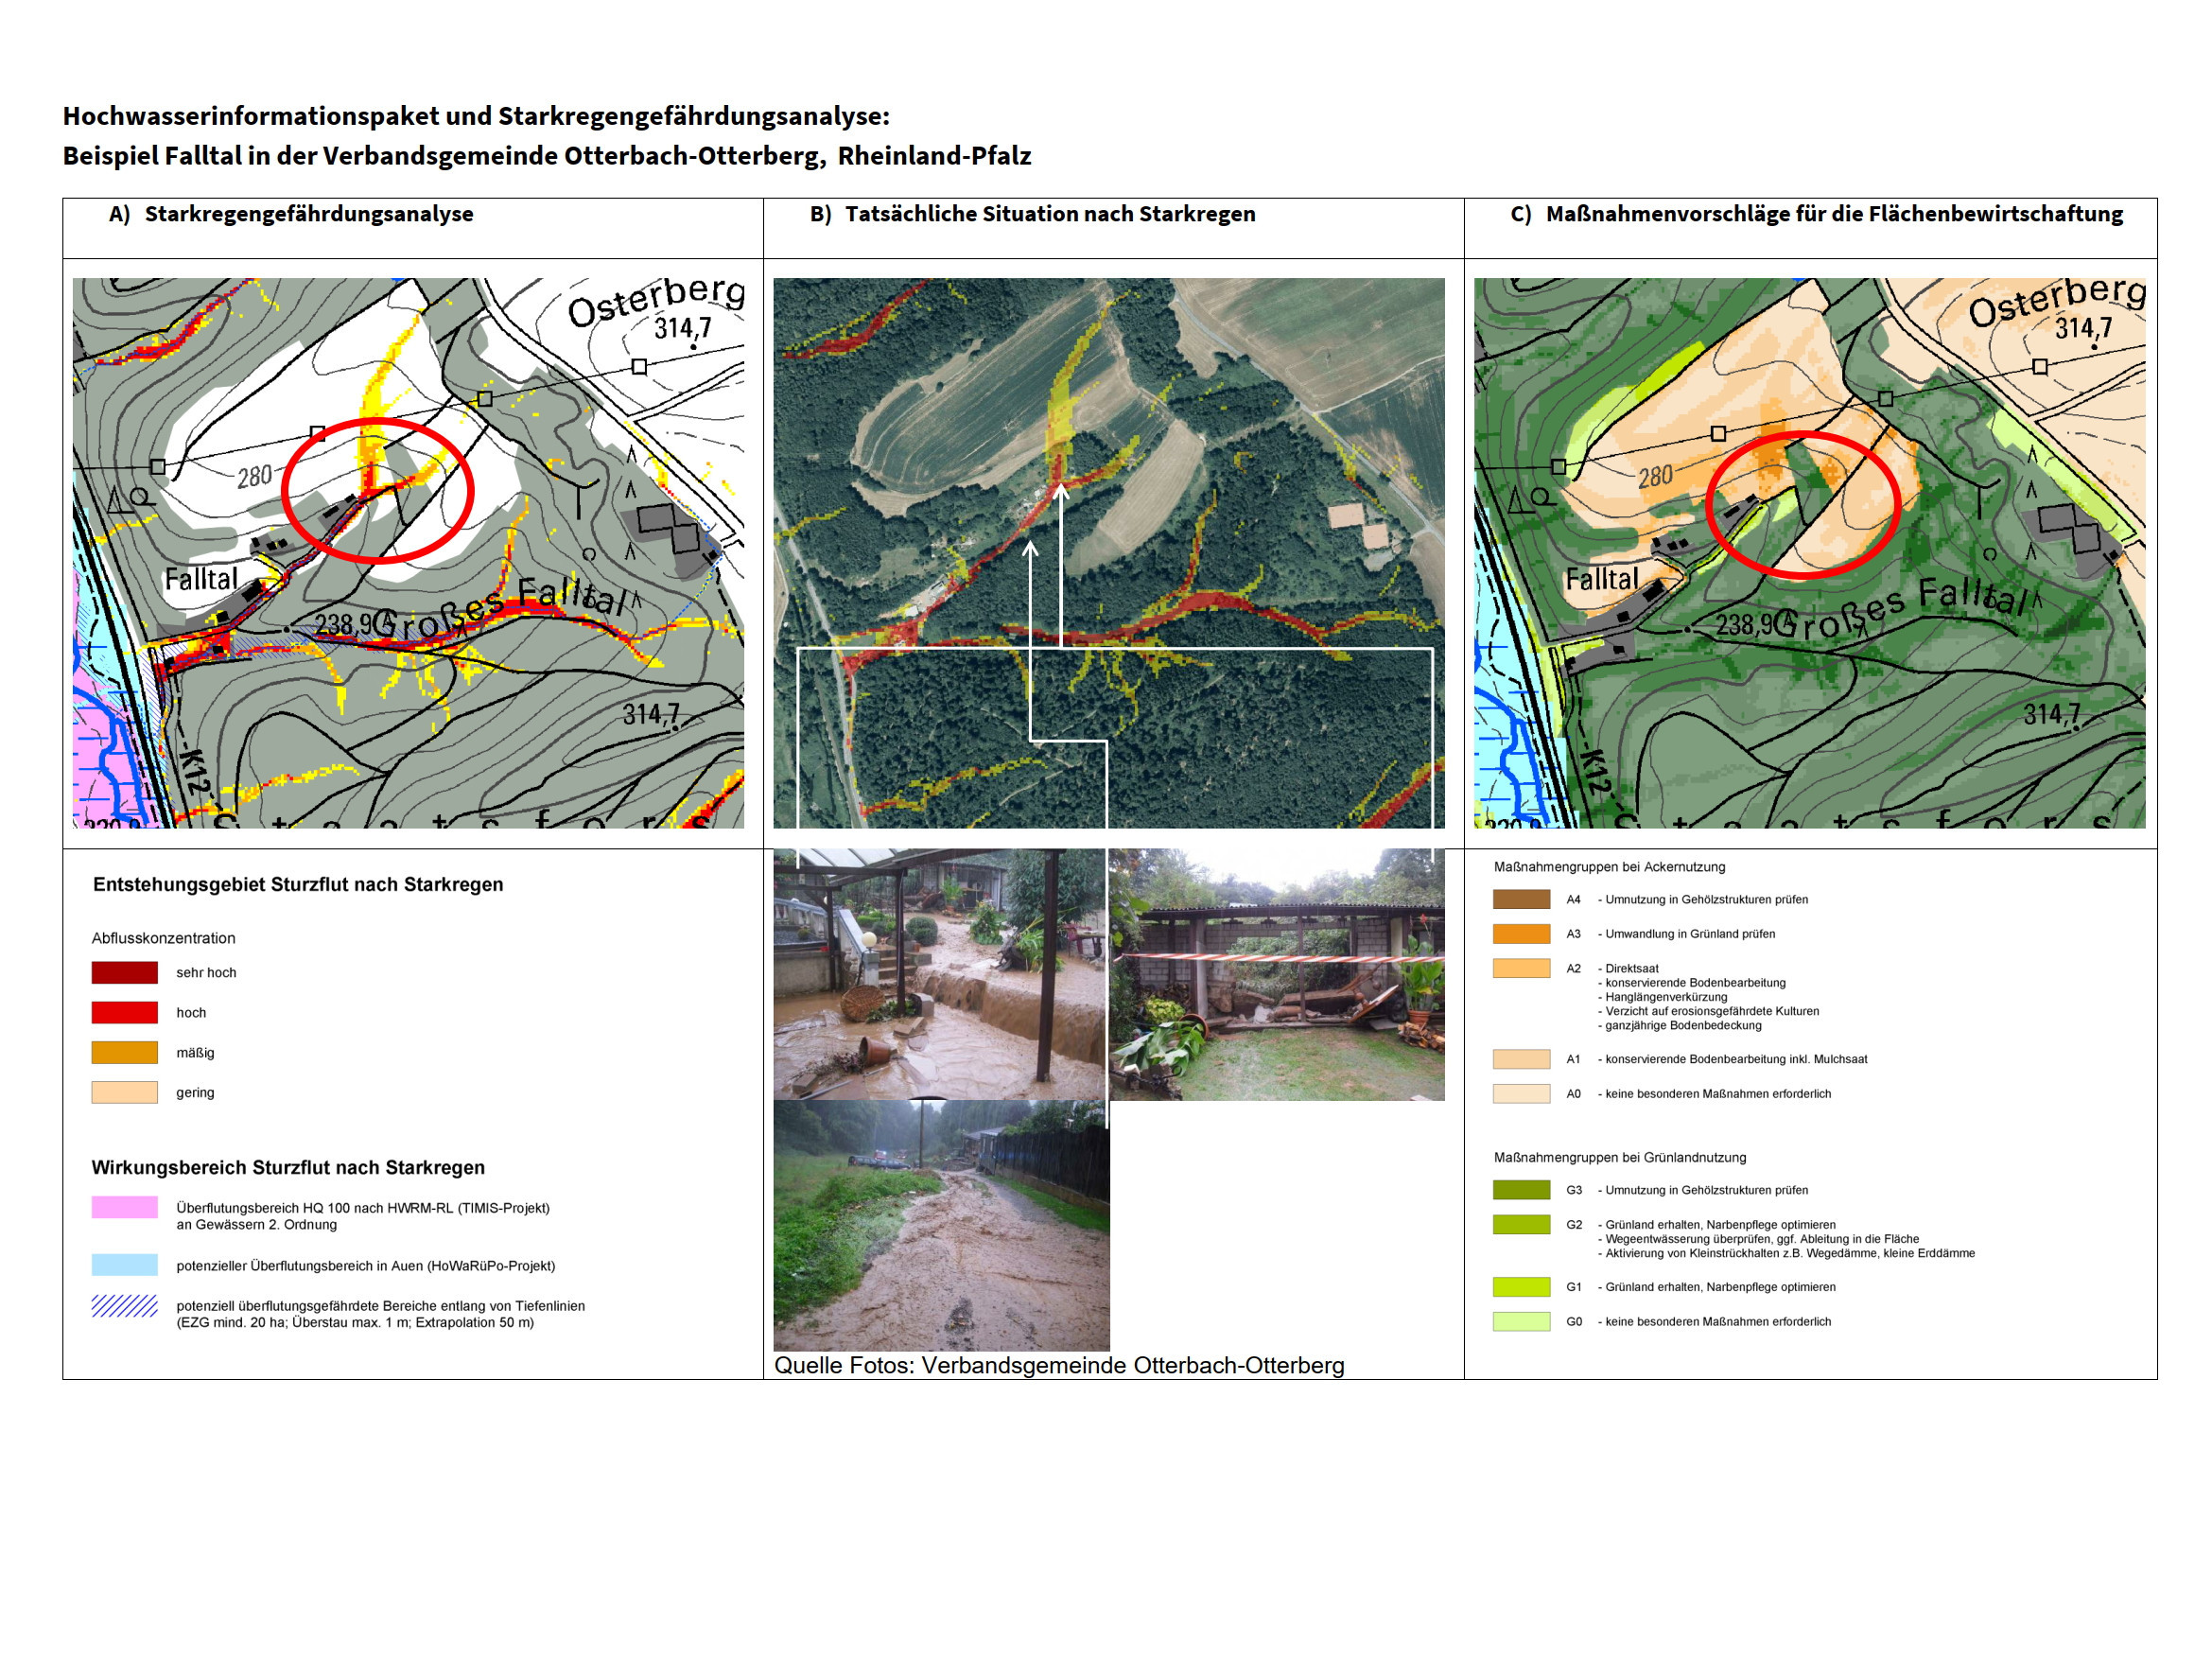 Anhand von drei Karten und Fotos sind Starkregengefährdungsanalyse, die tatsächliche Situation nach Starkregen und Maßnahmenvorschläge für Falltal in der Verbandsgemeinde Otterbach-Otterberg dargestellt.